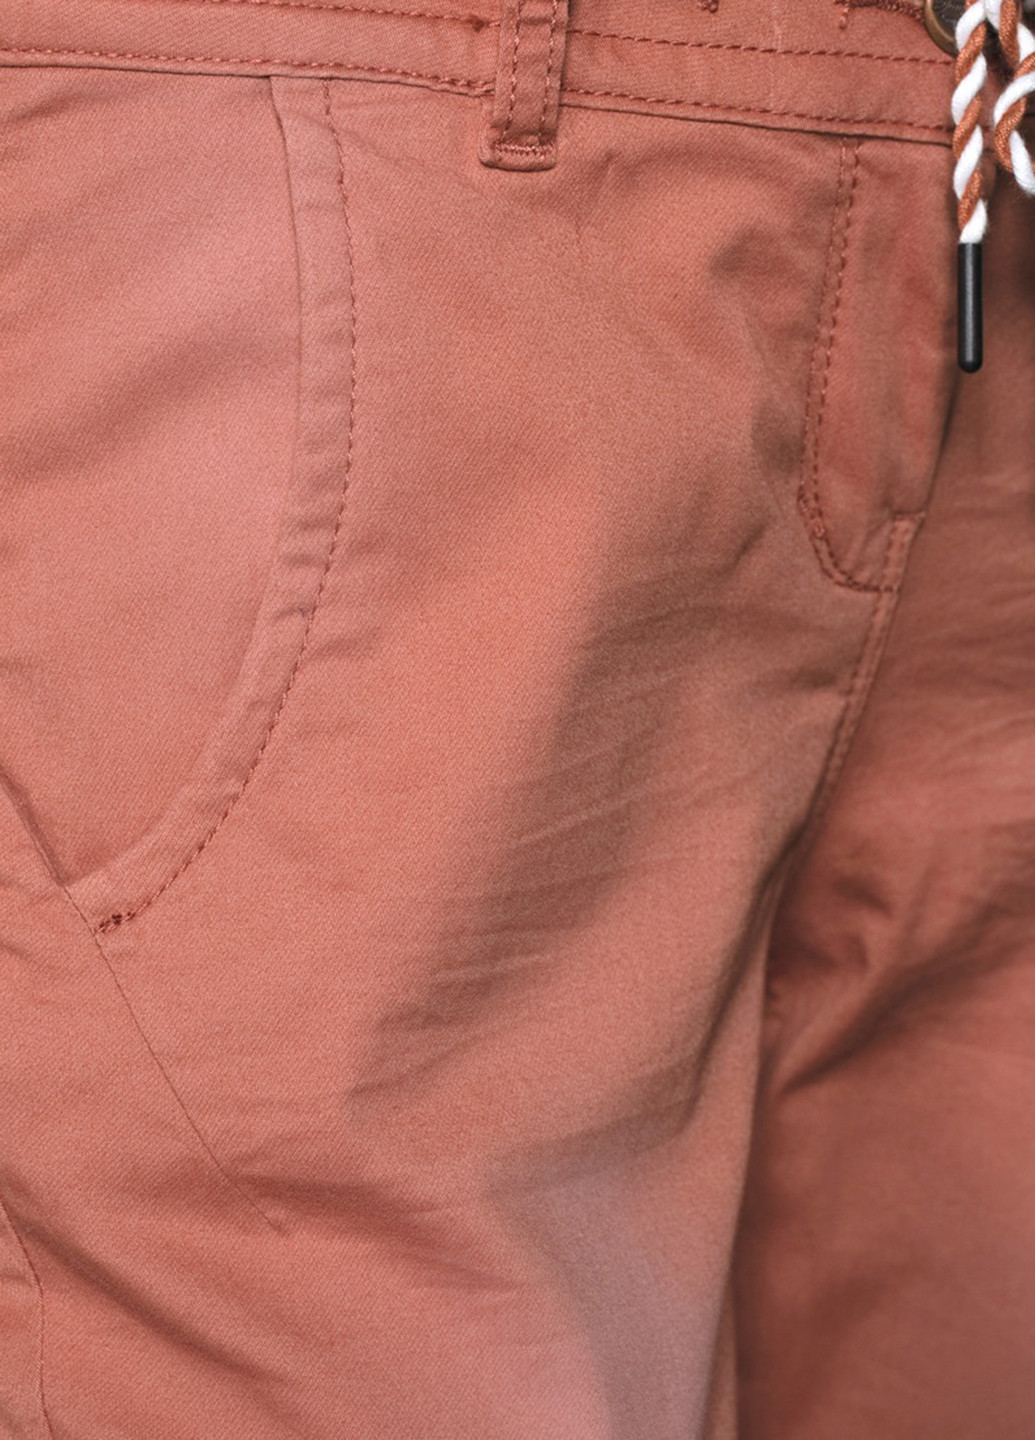 Персиковые джинсовые демисезонные укороченные, зауженные брюки Tom Tailor